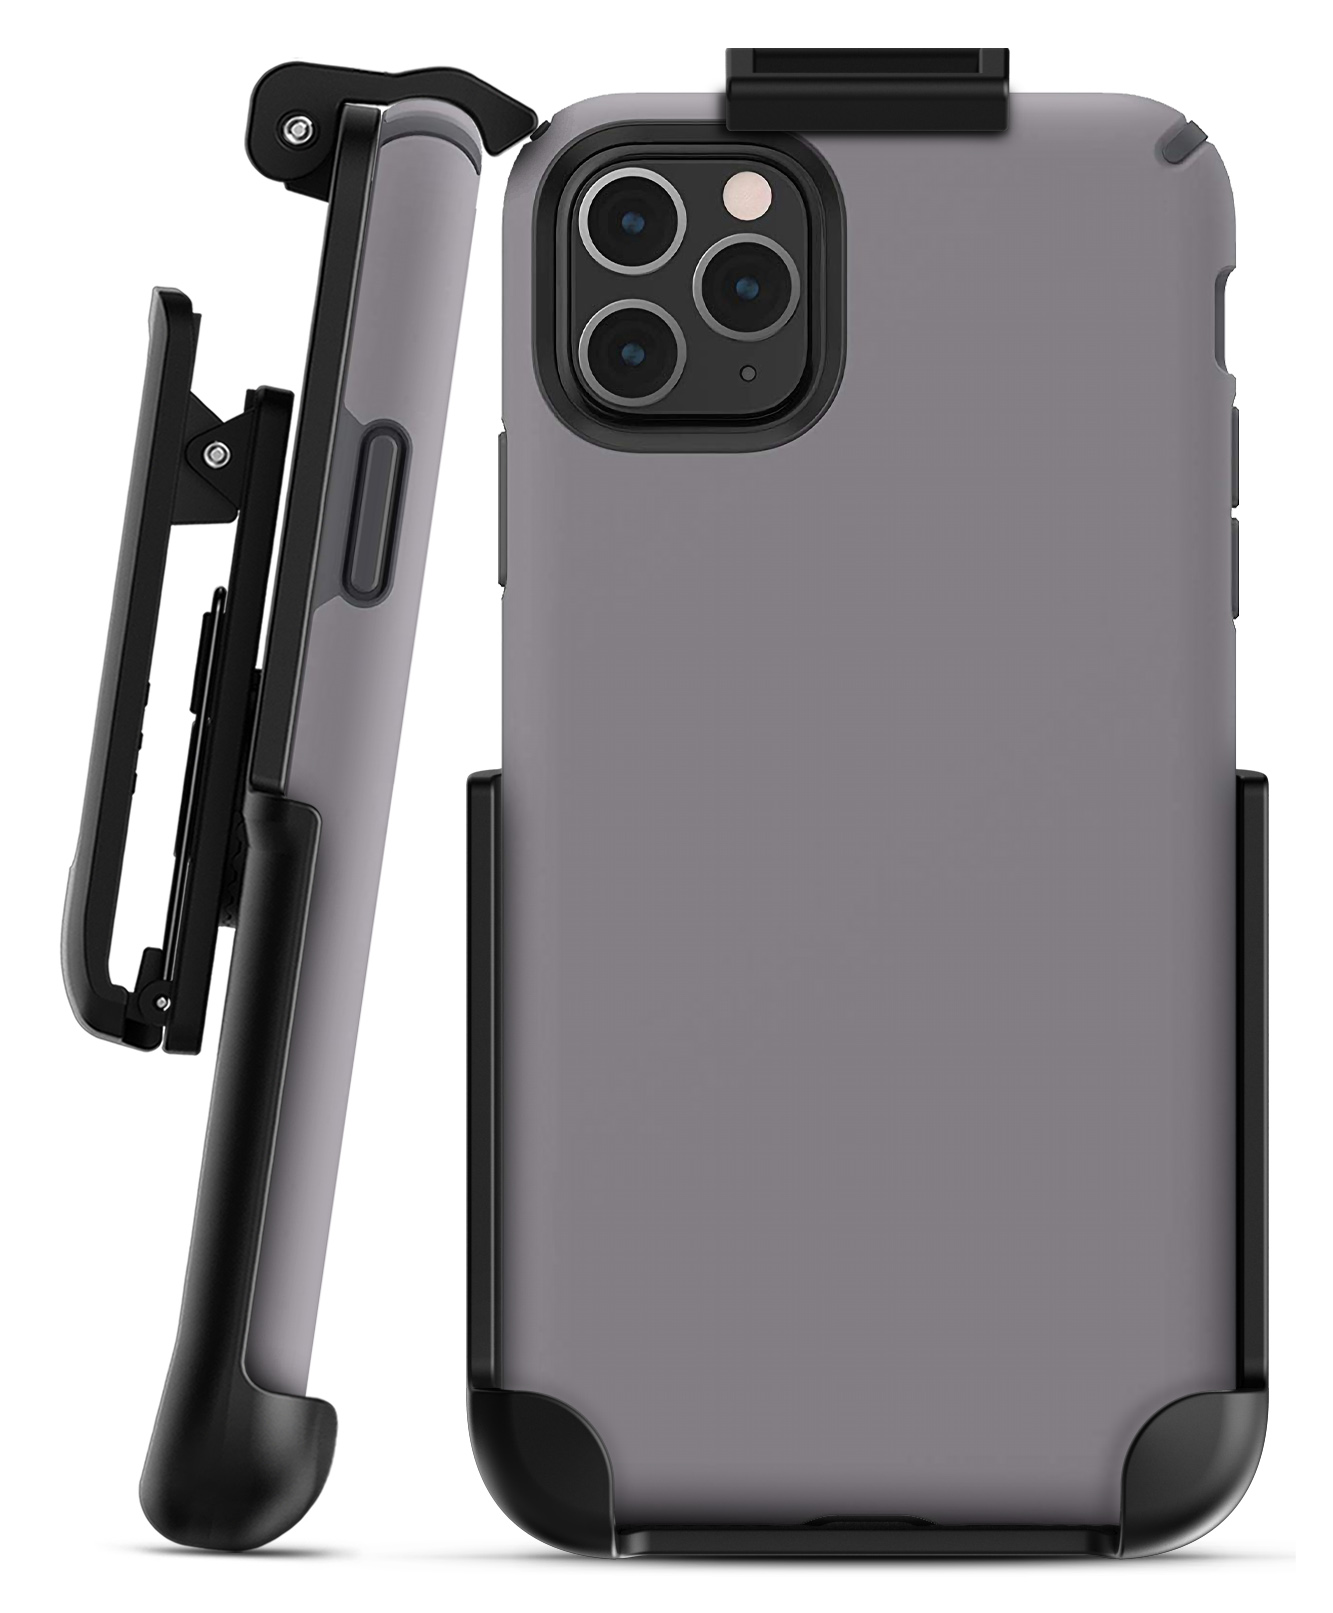 Speck Presidio Pro Case iPhone 11 Pro Max Black